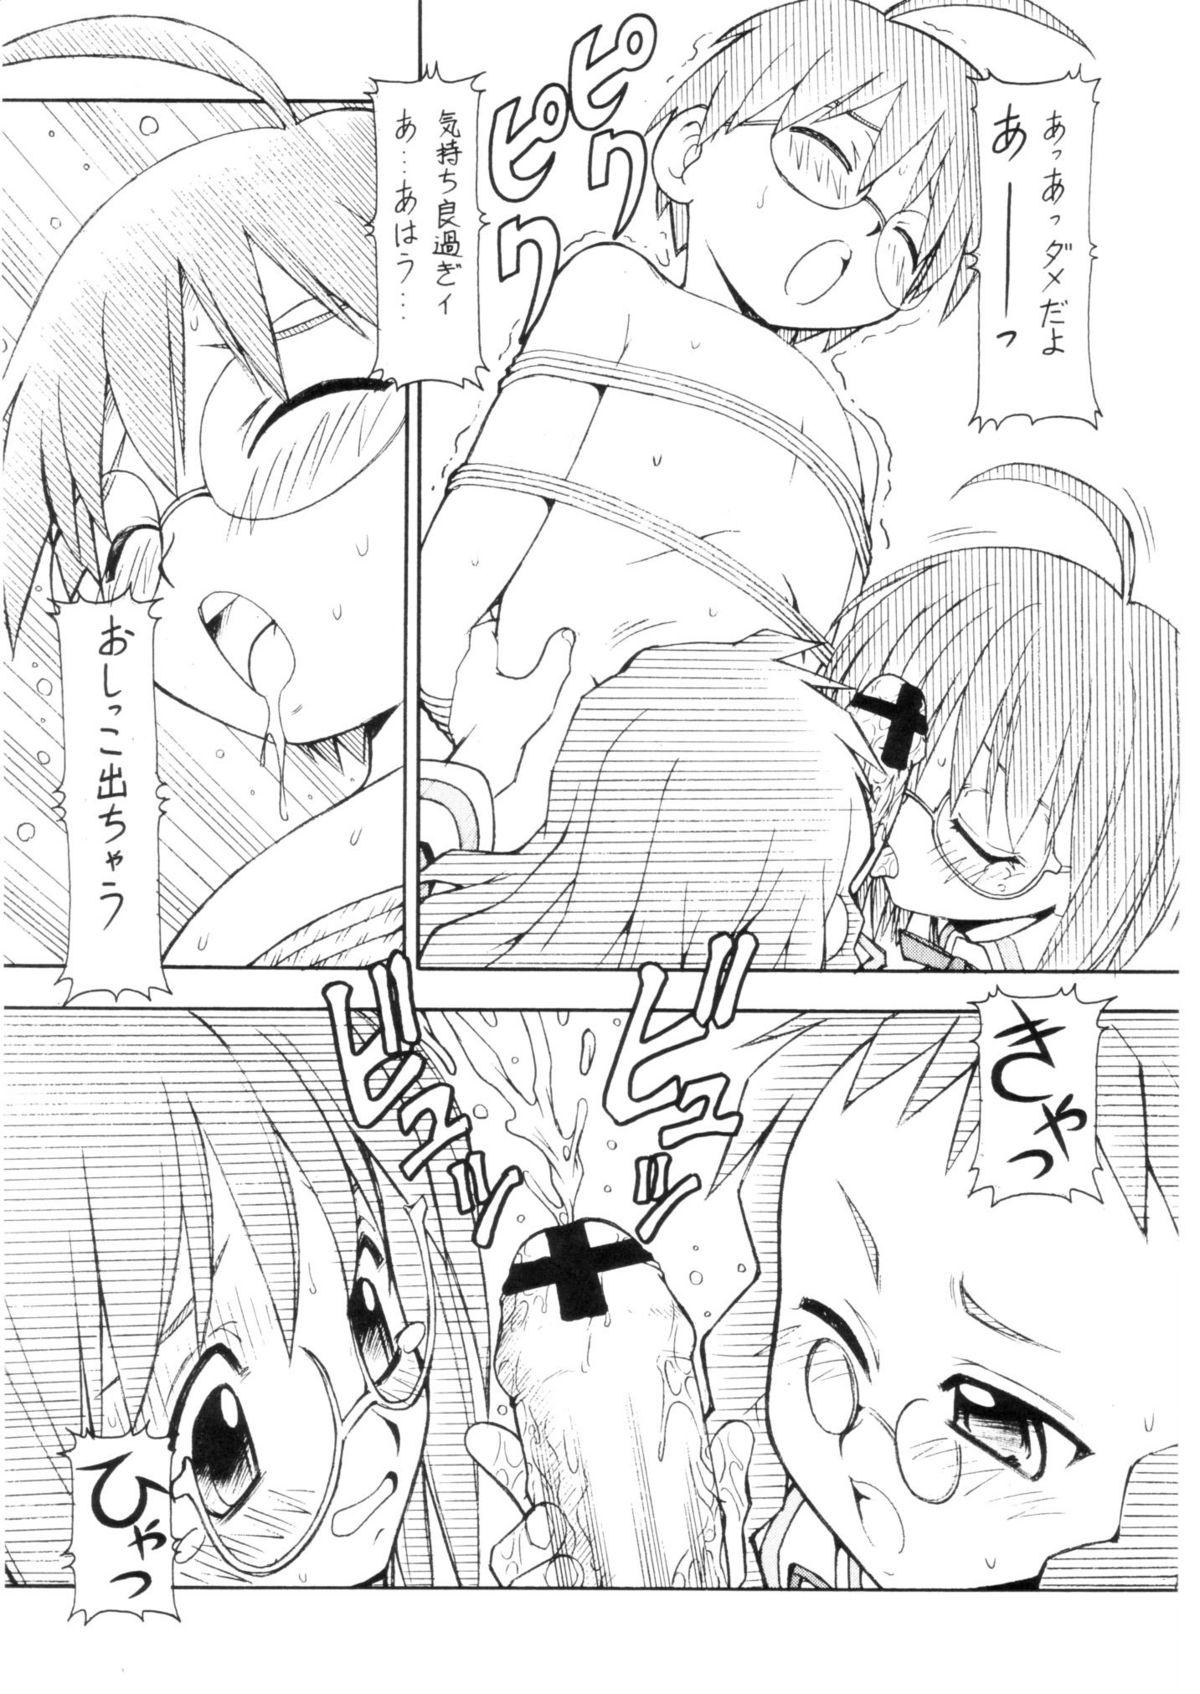 Muscles Cosu de Shitemasen! 3 Jcup! - Genshiken Culo Grande - Page 9